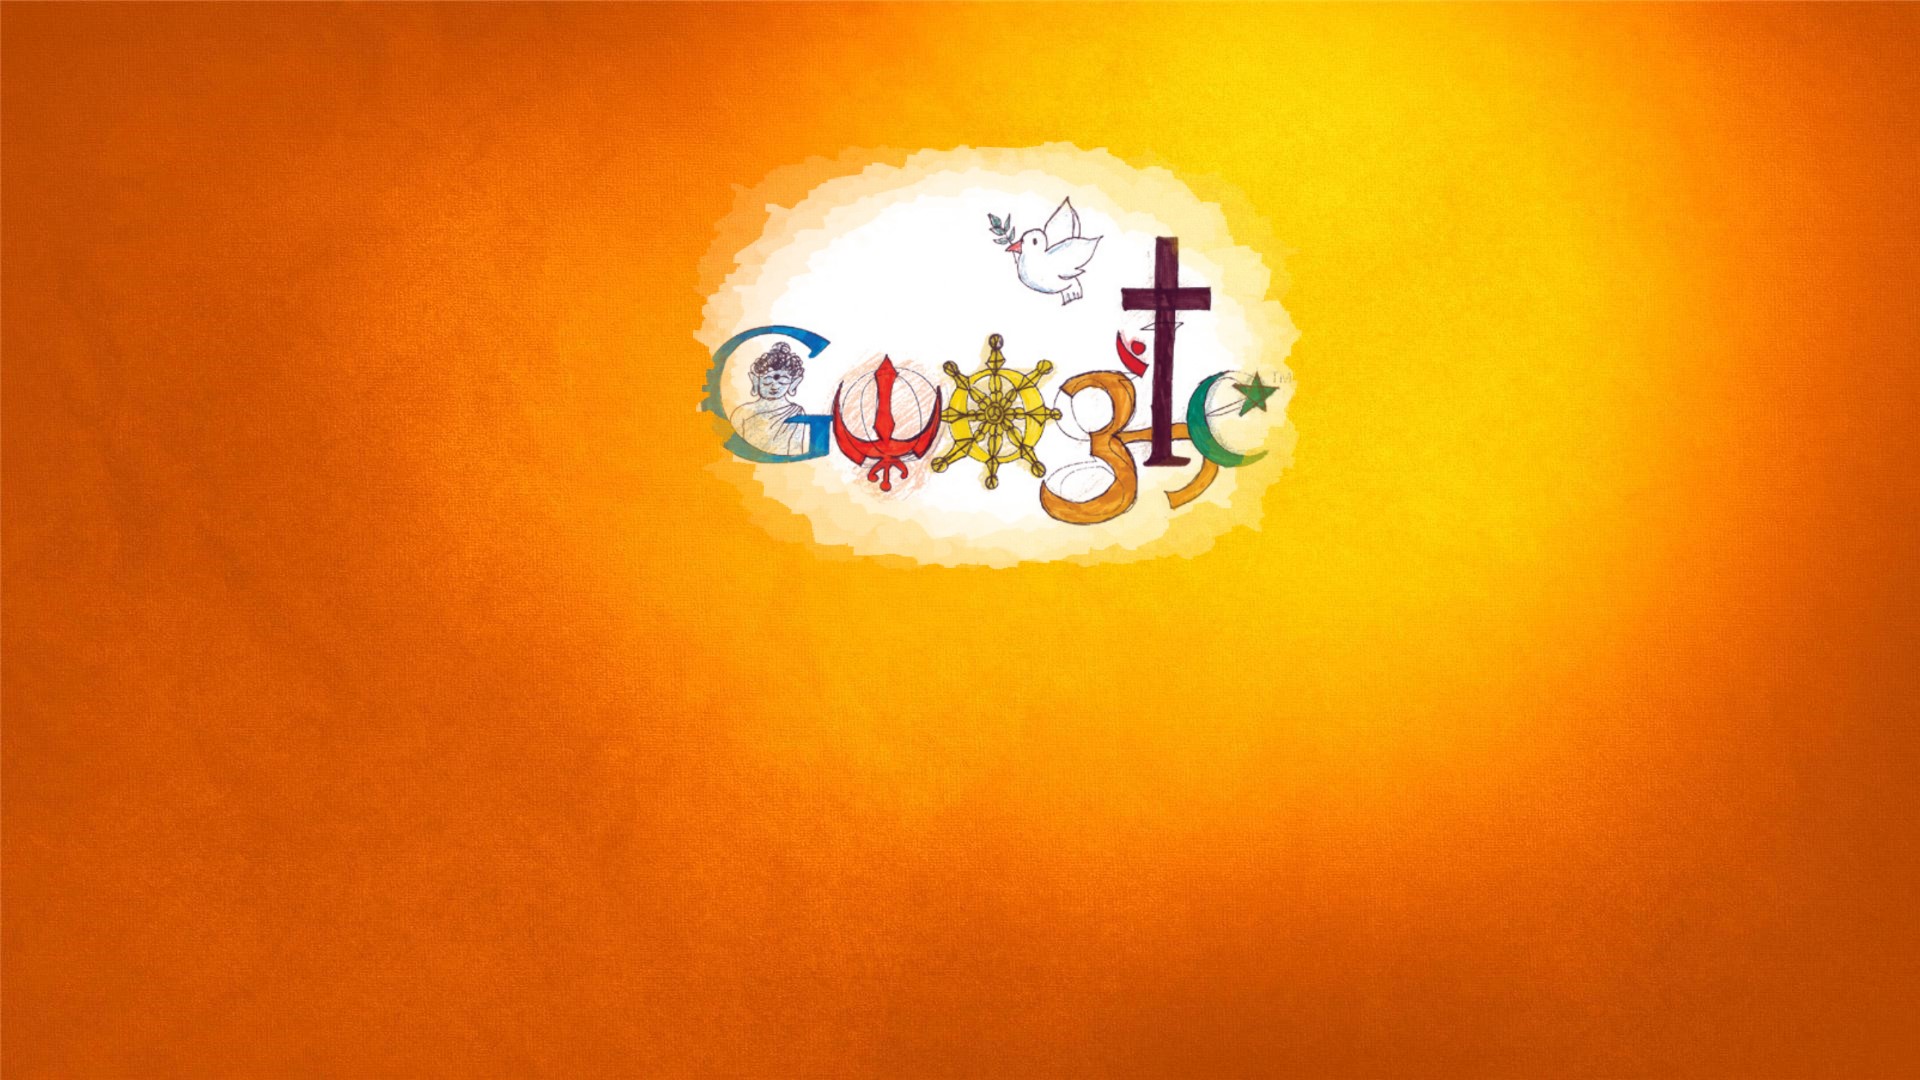 christianity religion buddhism peace unity dove google sikh religion